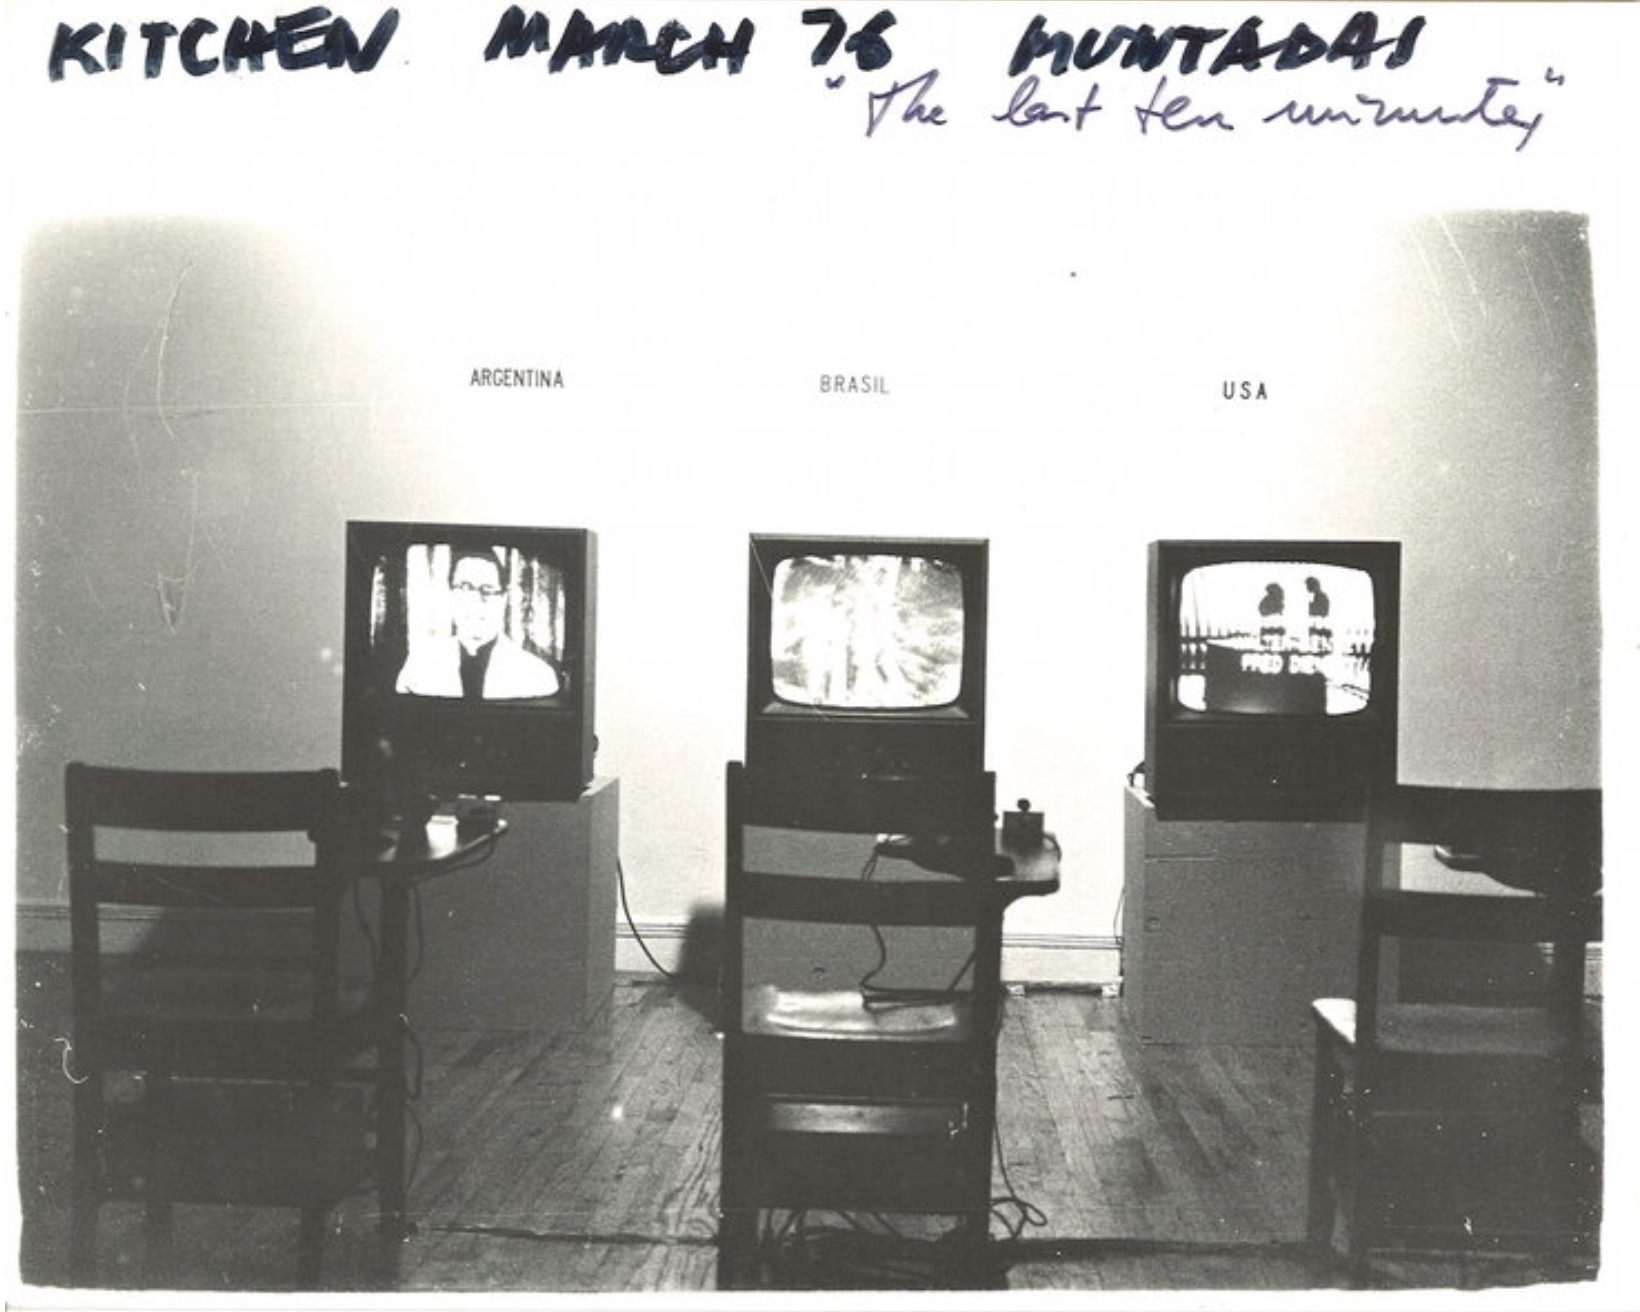 Antoni Muntadas, The Last Ten Minutes, 1976. Installation view at The Kitchen. Photo by Antoni Muntadas.